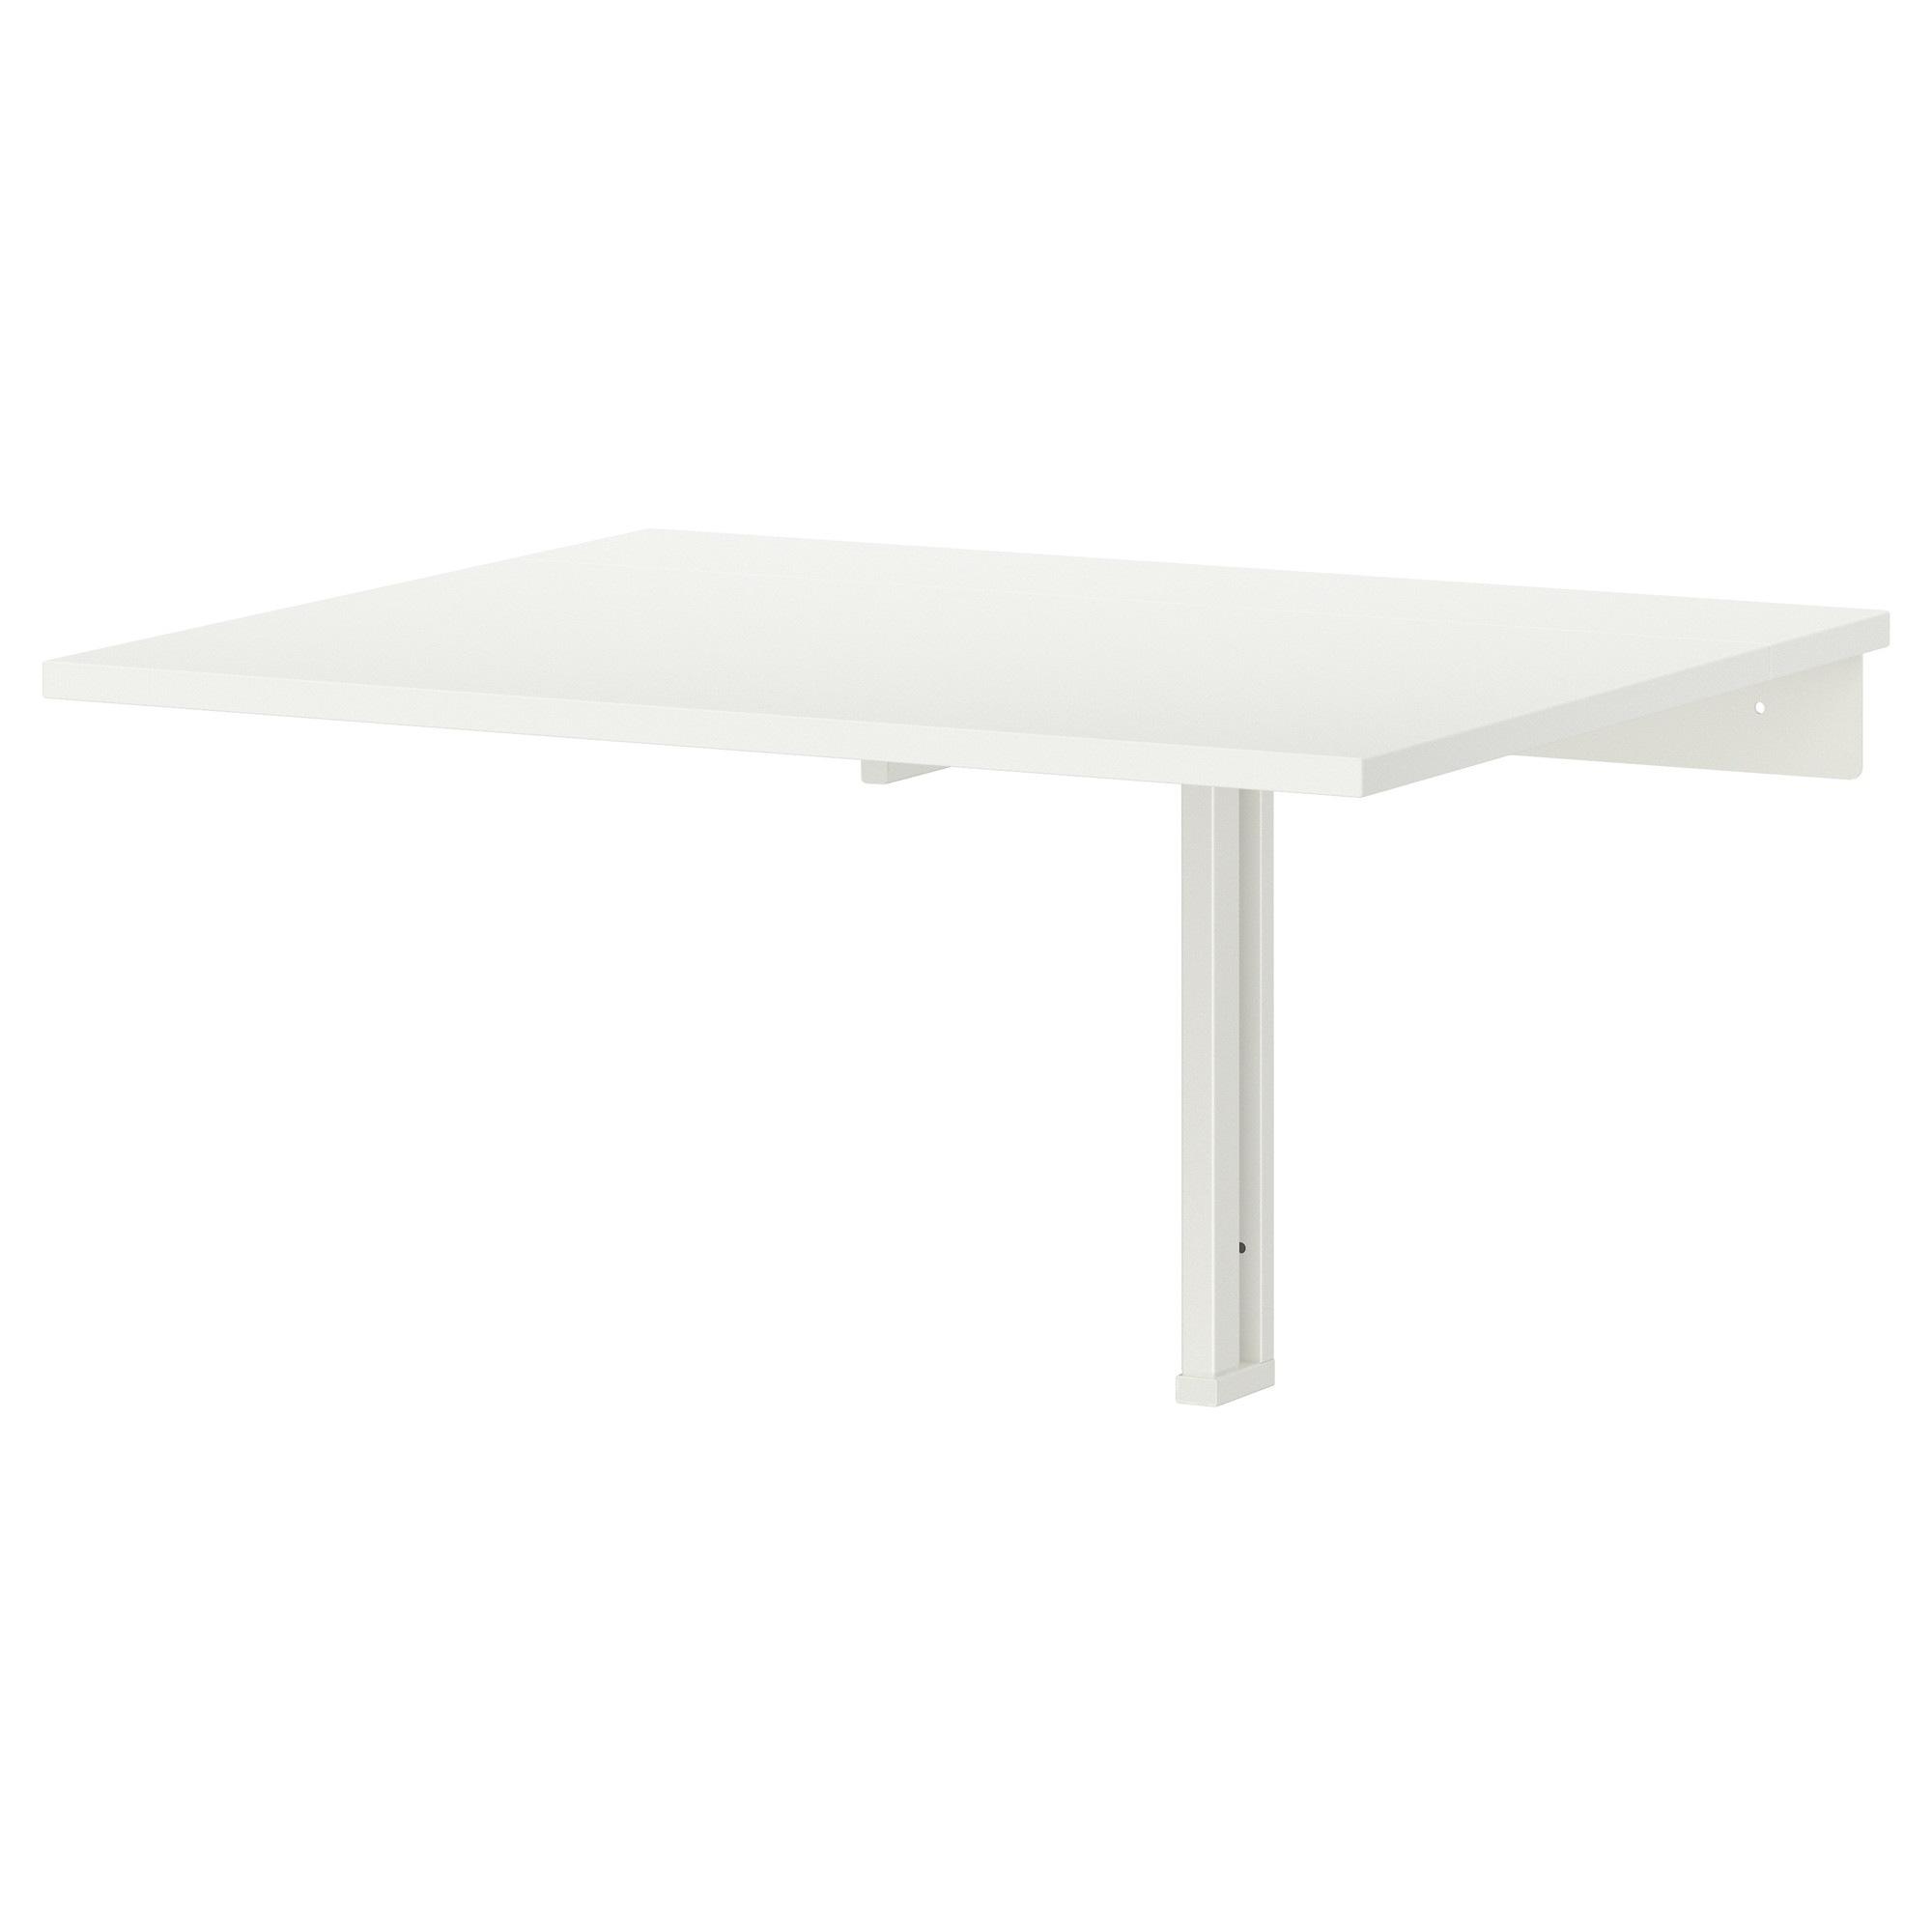 [ด่วน!! โปรโมชั่นมีจำนวนจำกัด] โต๊ะพับยึดผนัง, ขาว ขนาด 74x60 ซม. โต๊ะบาร์ NORBERG  ขนาด 74x60 ซม.